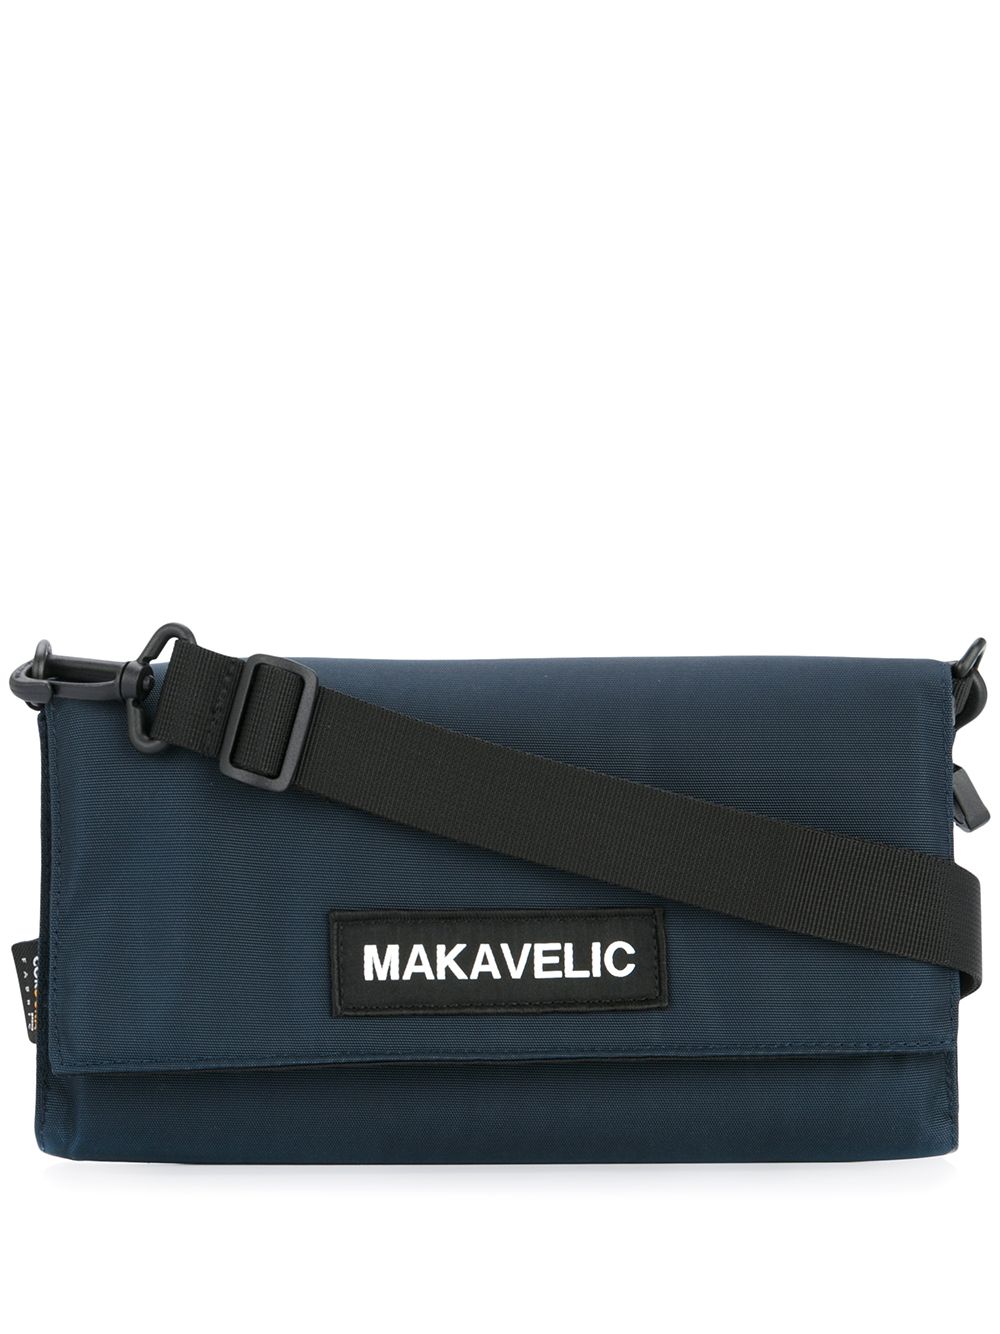 фото Makavelic сумка на плечо